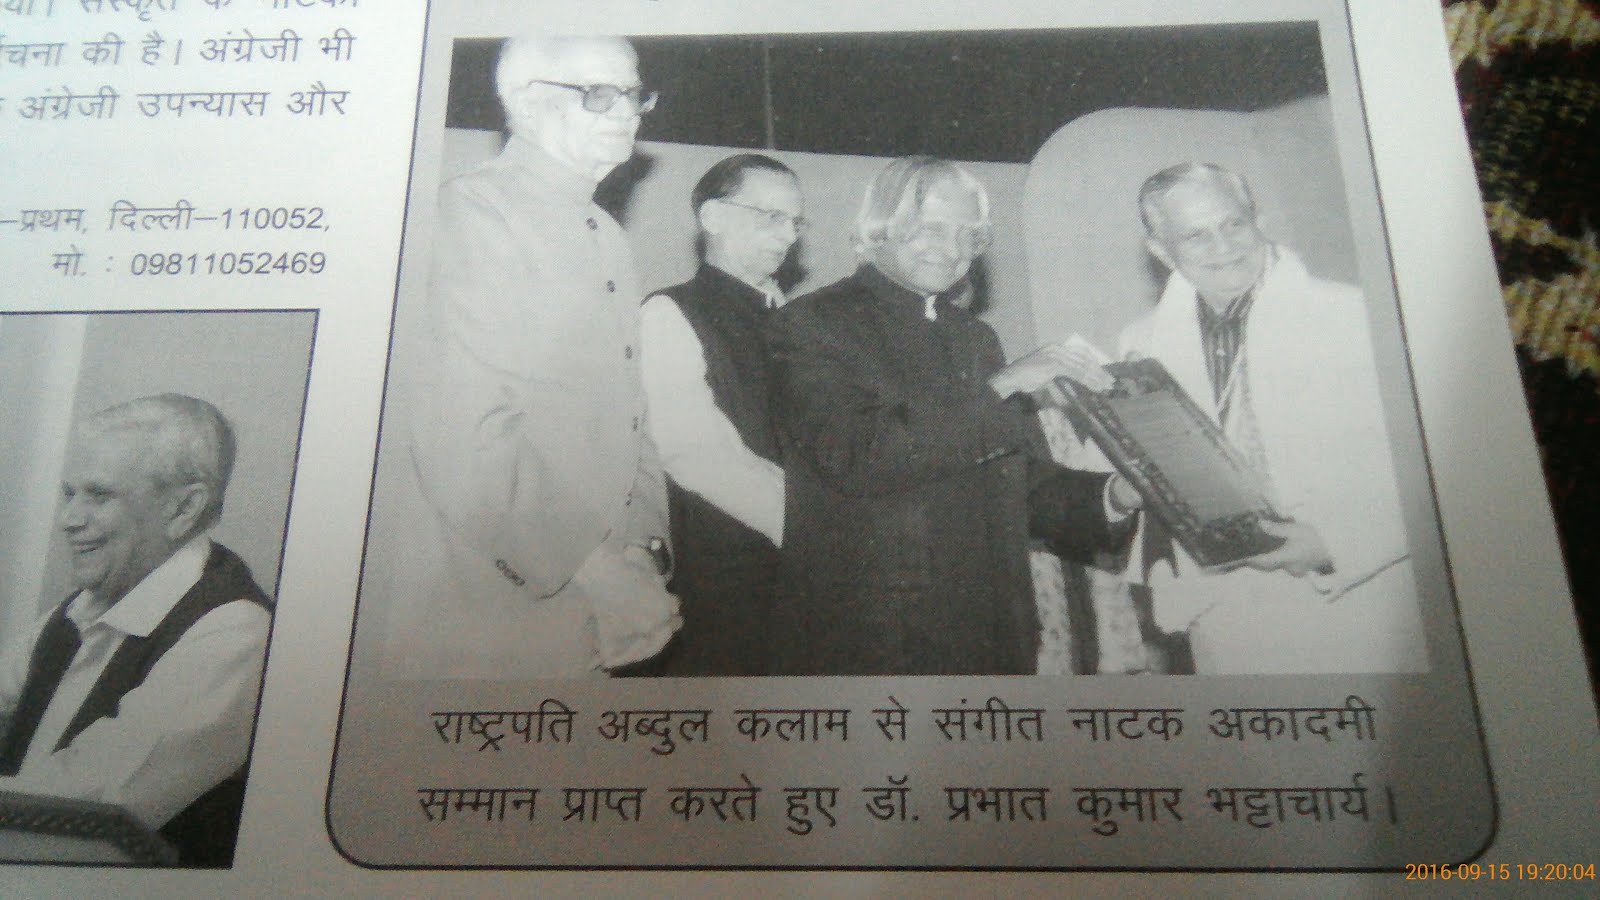 राष्ट्रपति अब्दुल कलाम जी  से संगीत नाटक अकादमी सम्मान प्राप्त करते हुए डॉ.प्रभात कुमार भट्टाचार्य